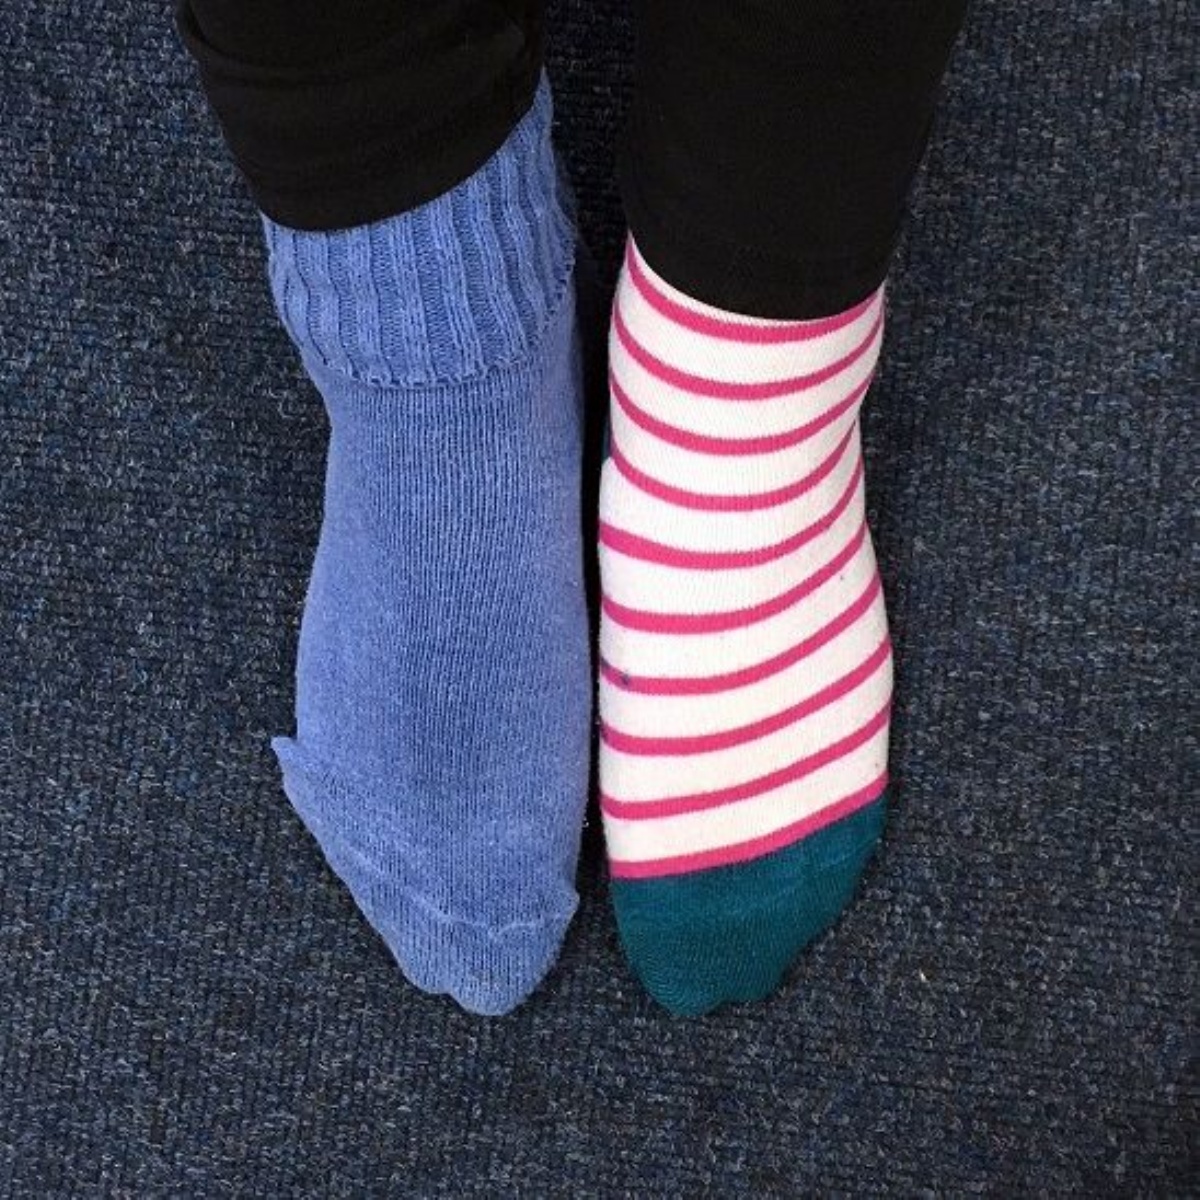 Wearing socks. Носки вискоза. Holey Socks. Носки плотные милые. Corab Socks.